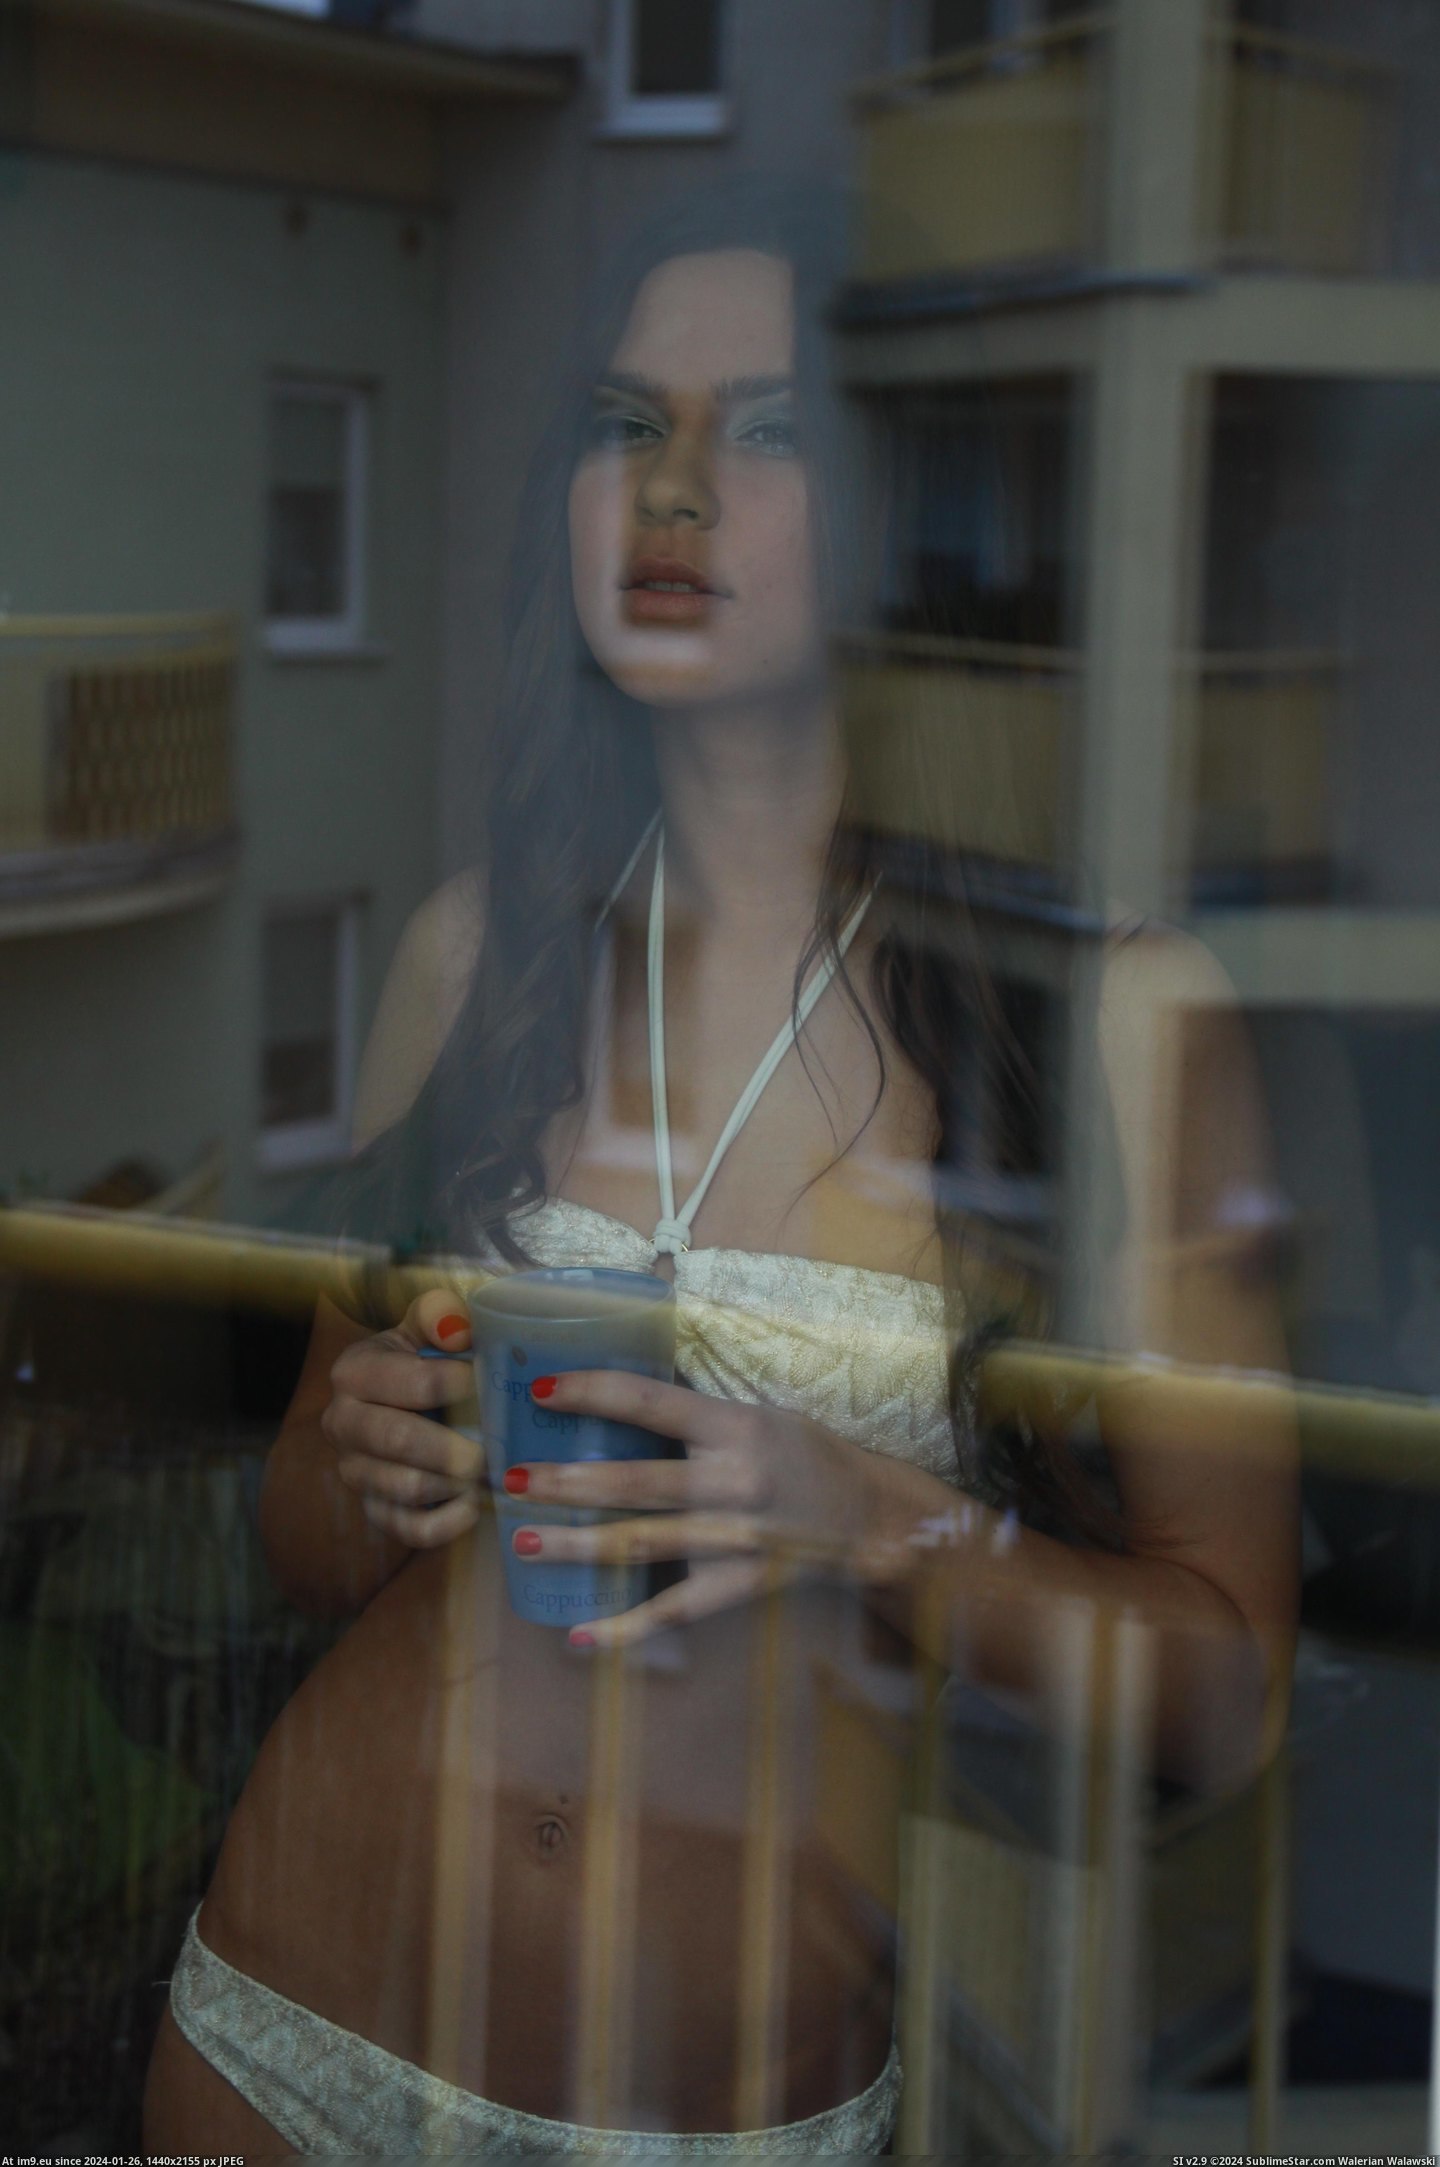 #Hot #Softcore #Arc #Nude #Models 315 - [2012] Pic. (Bild von album Erotic Arc 2012))